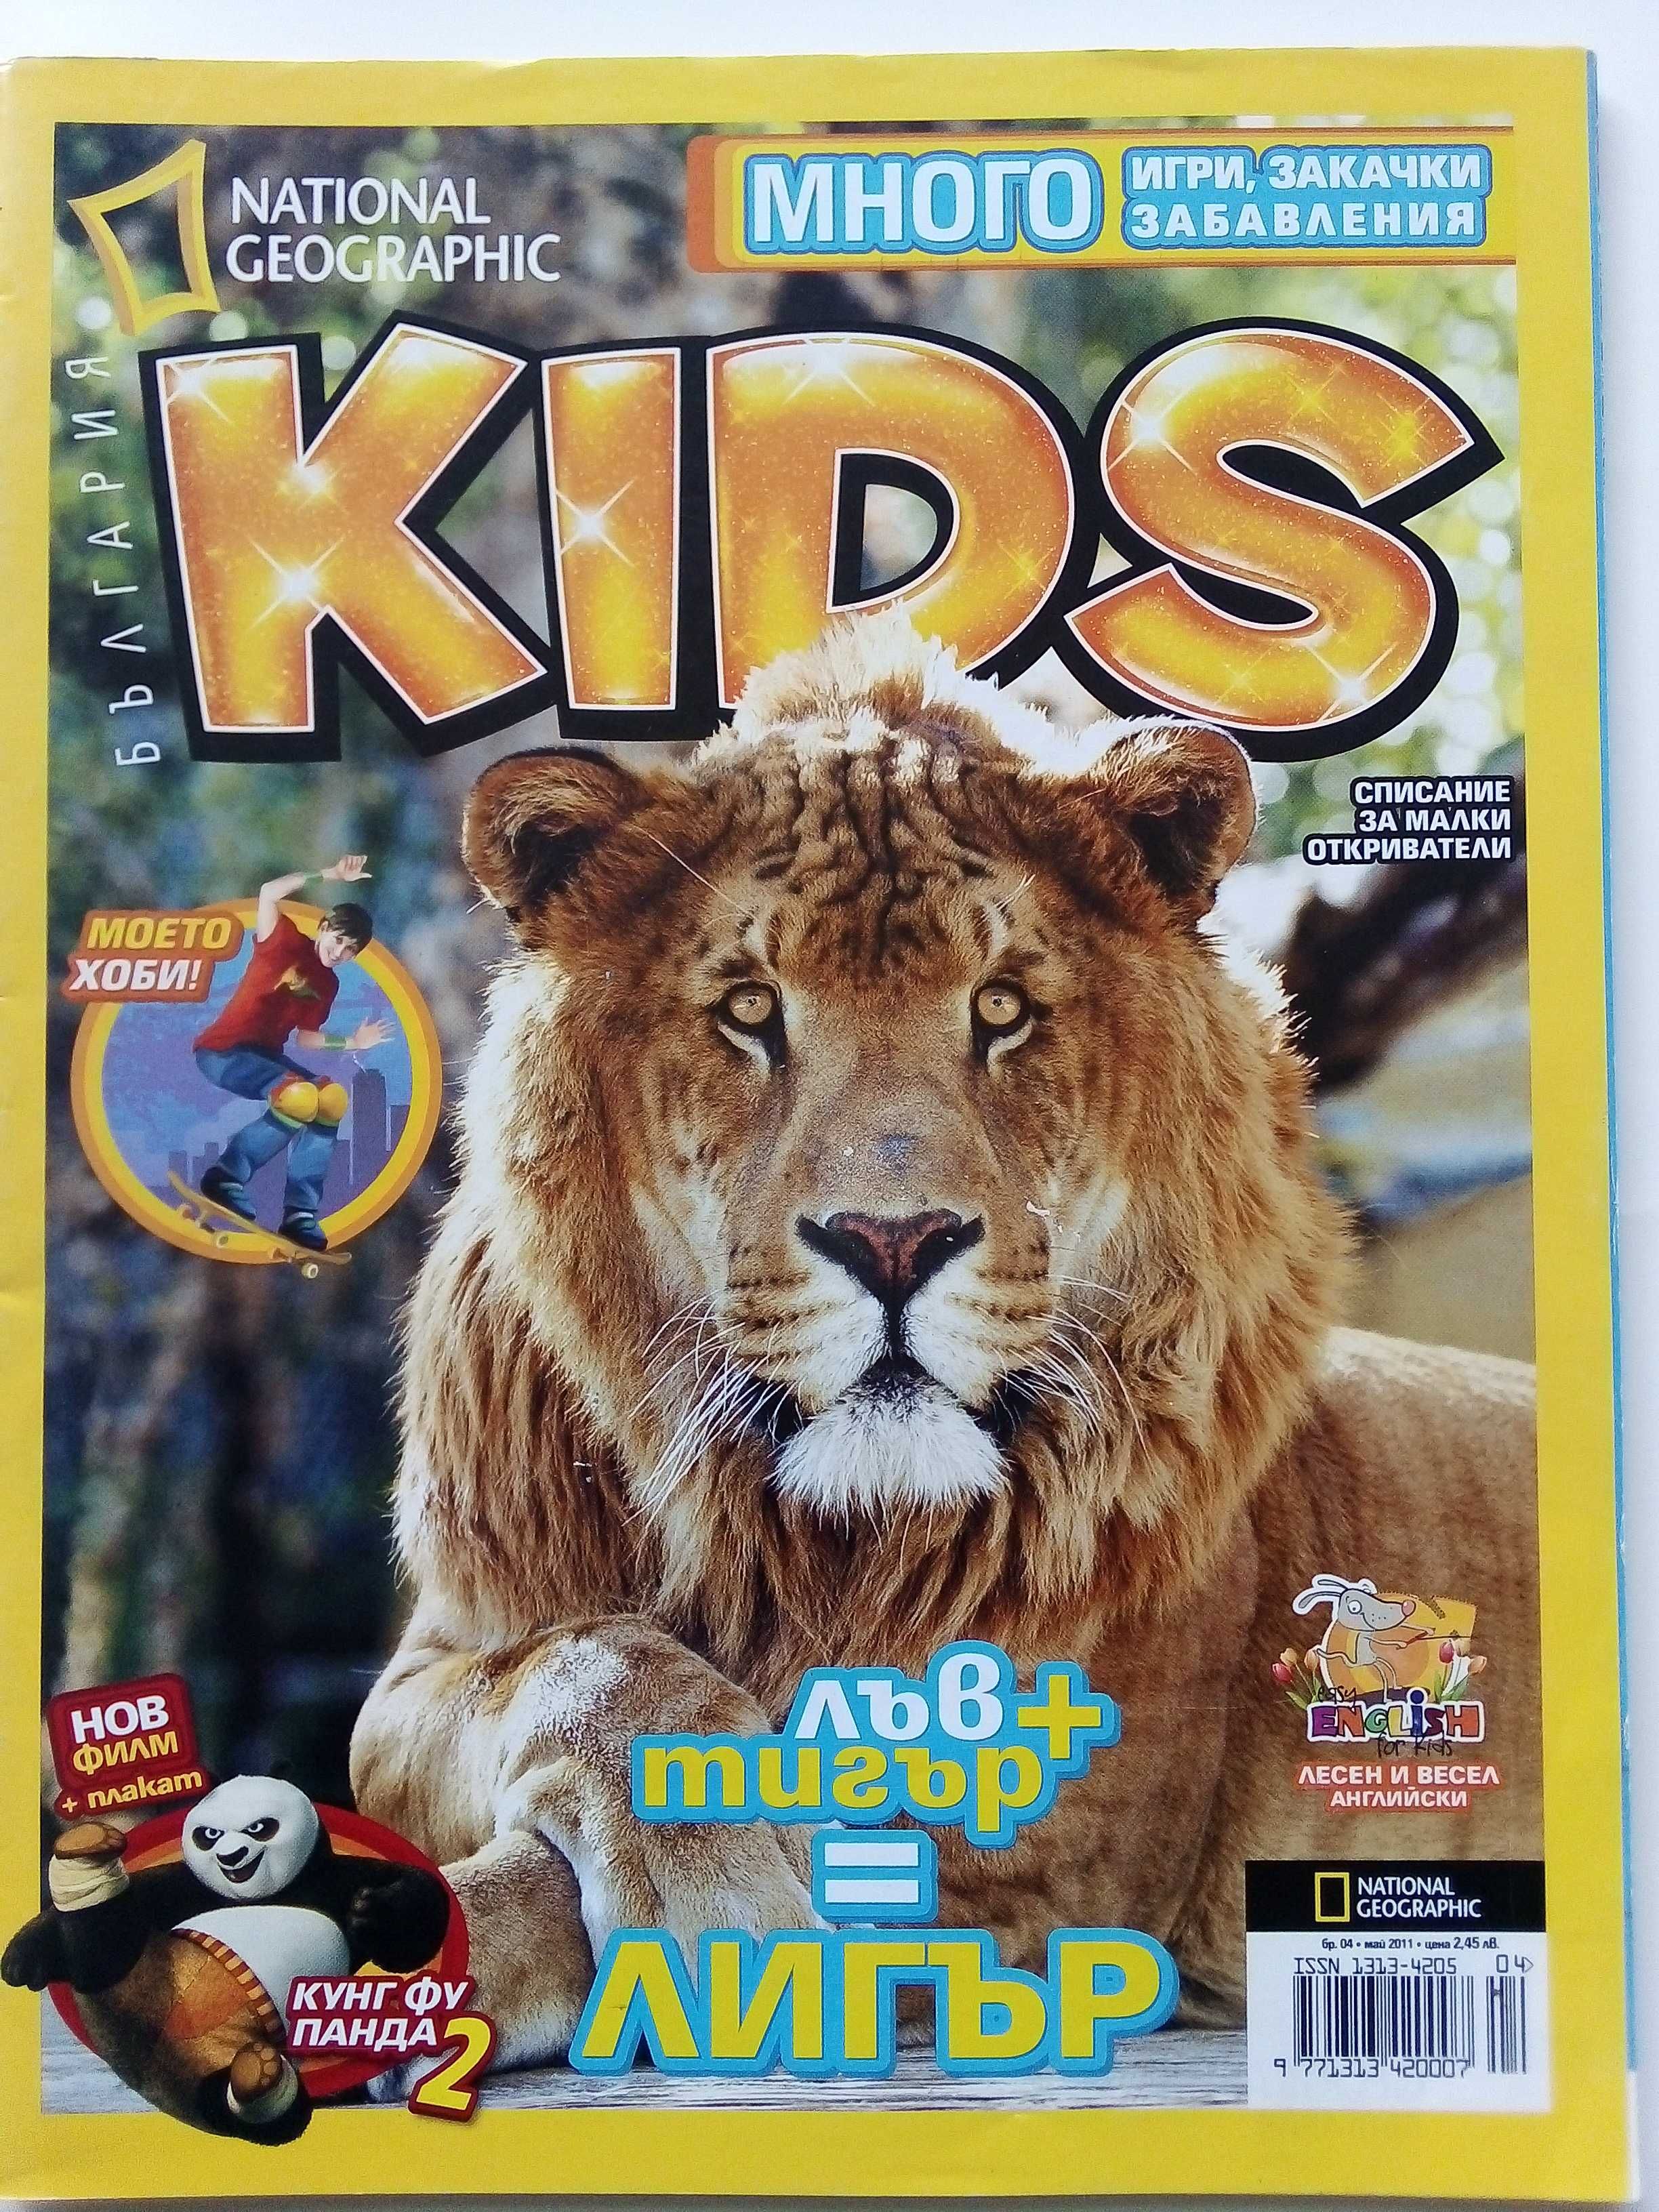 Списания "National Geographic KIDS"